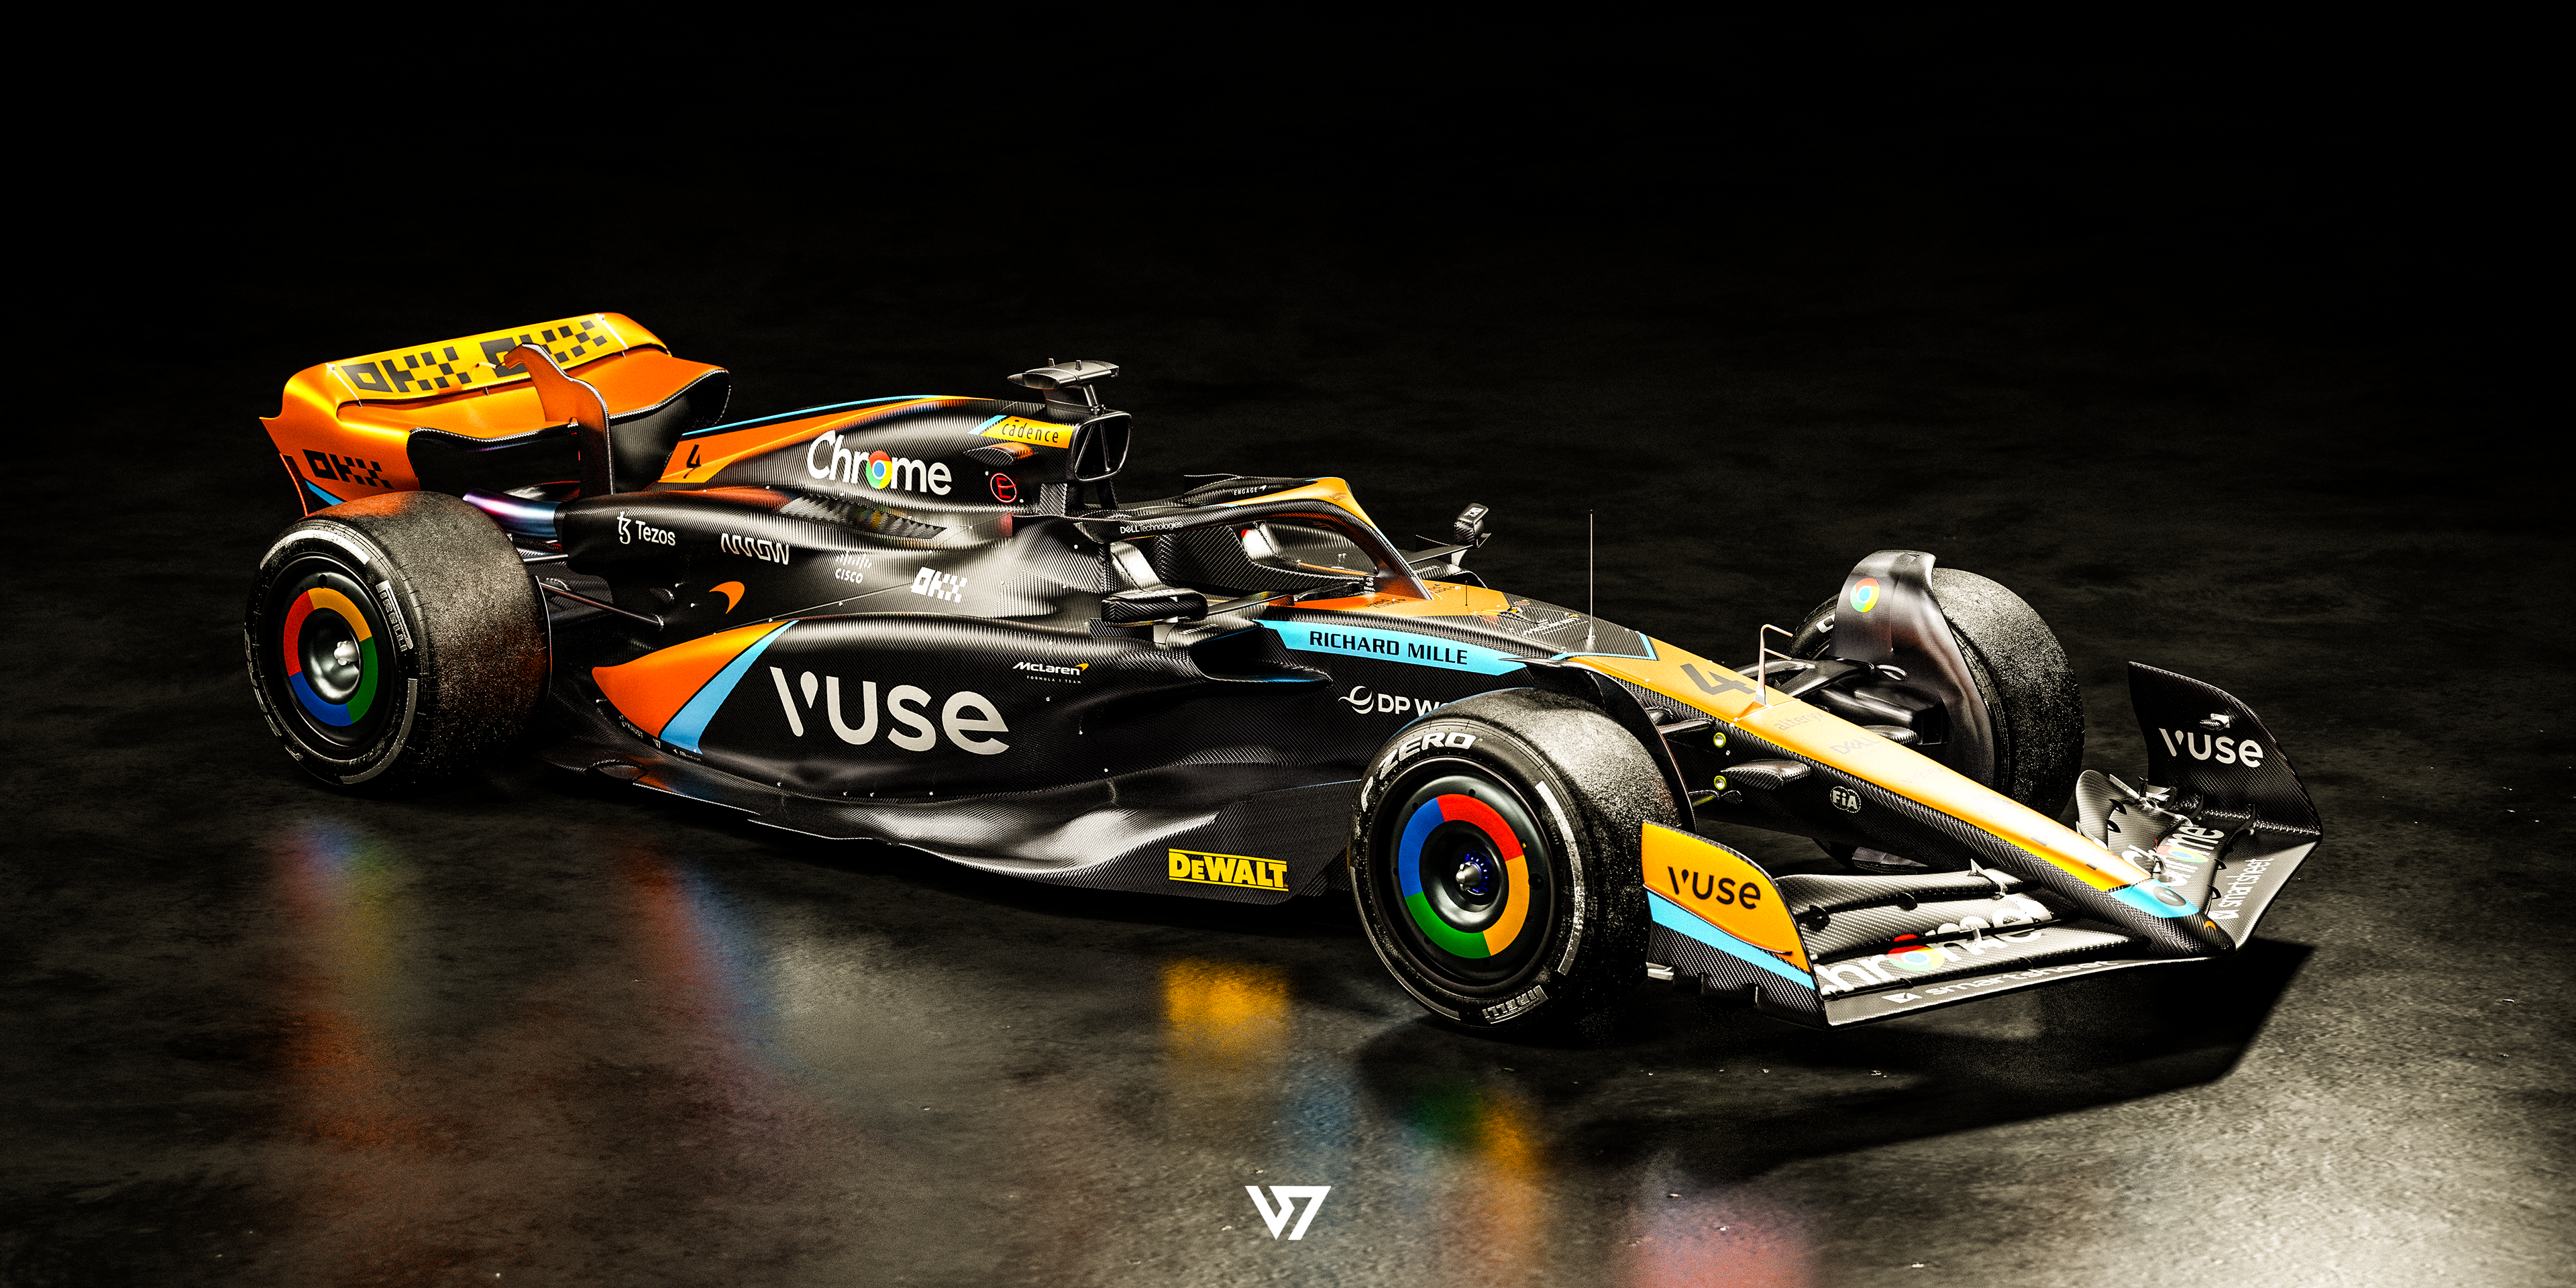 Macchina da corsa McLaren Formula 1 su uno sfondo scuro, simboleggiando l'alta tecnologia e le prestazioni che caratterizzano le carriere in McLaren.